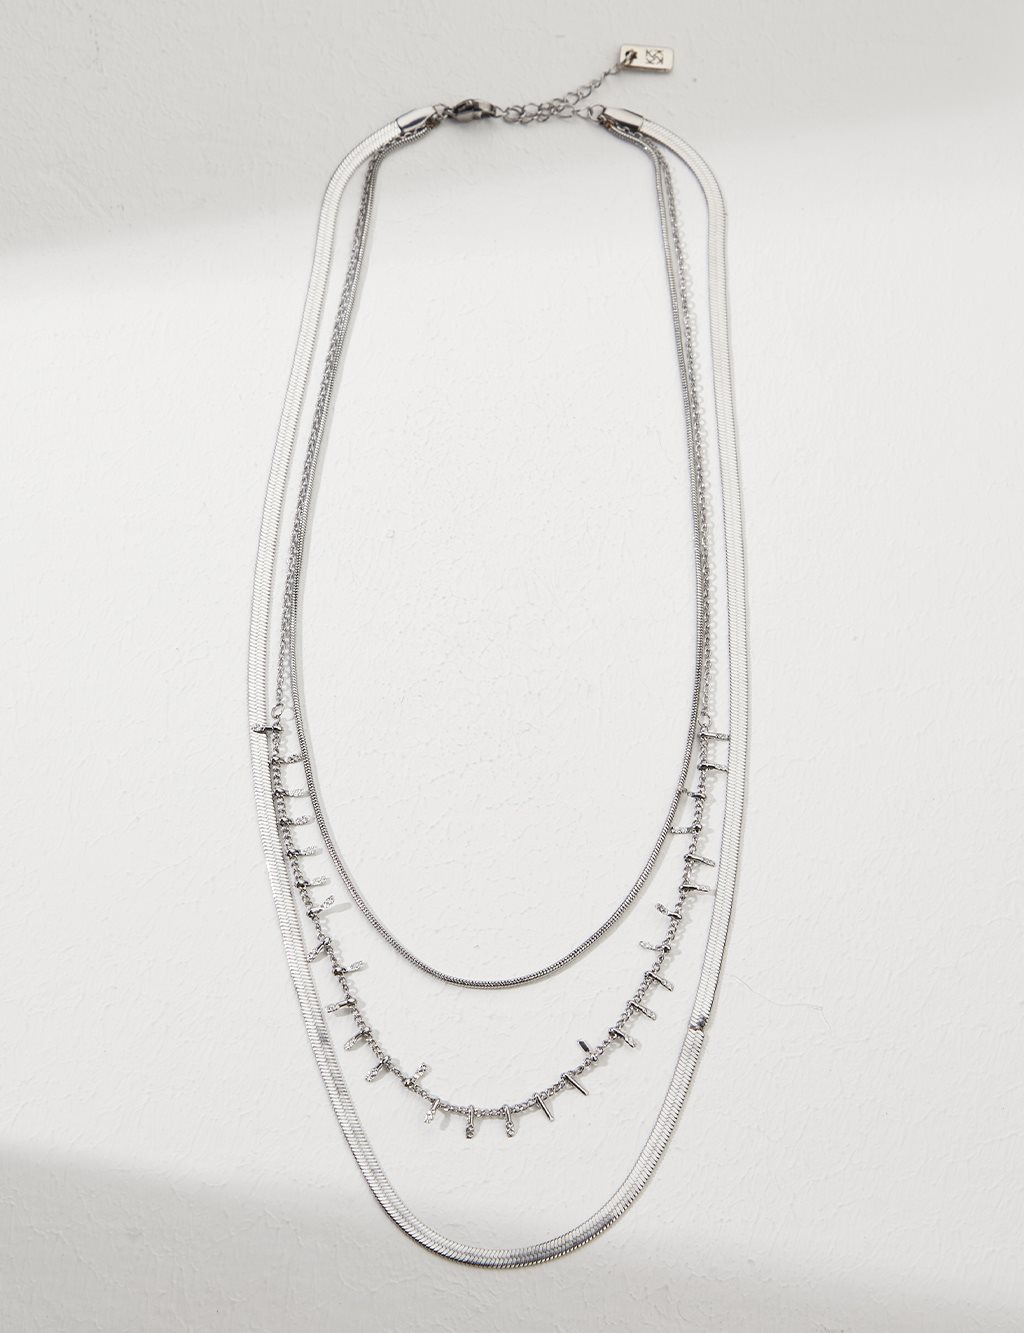 Multi Chain Design Necklace Silver Color